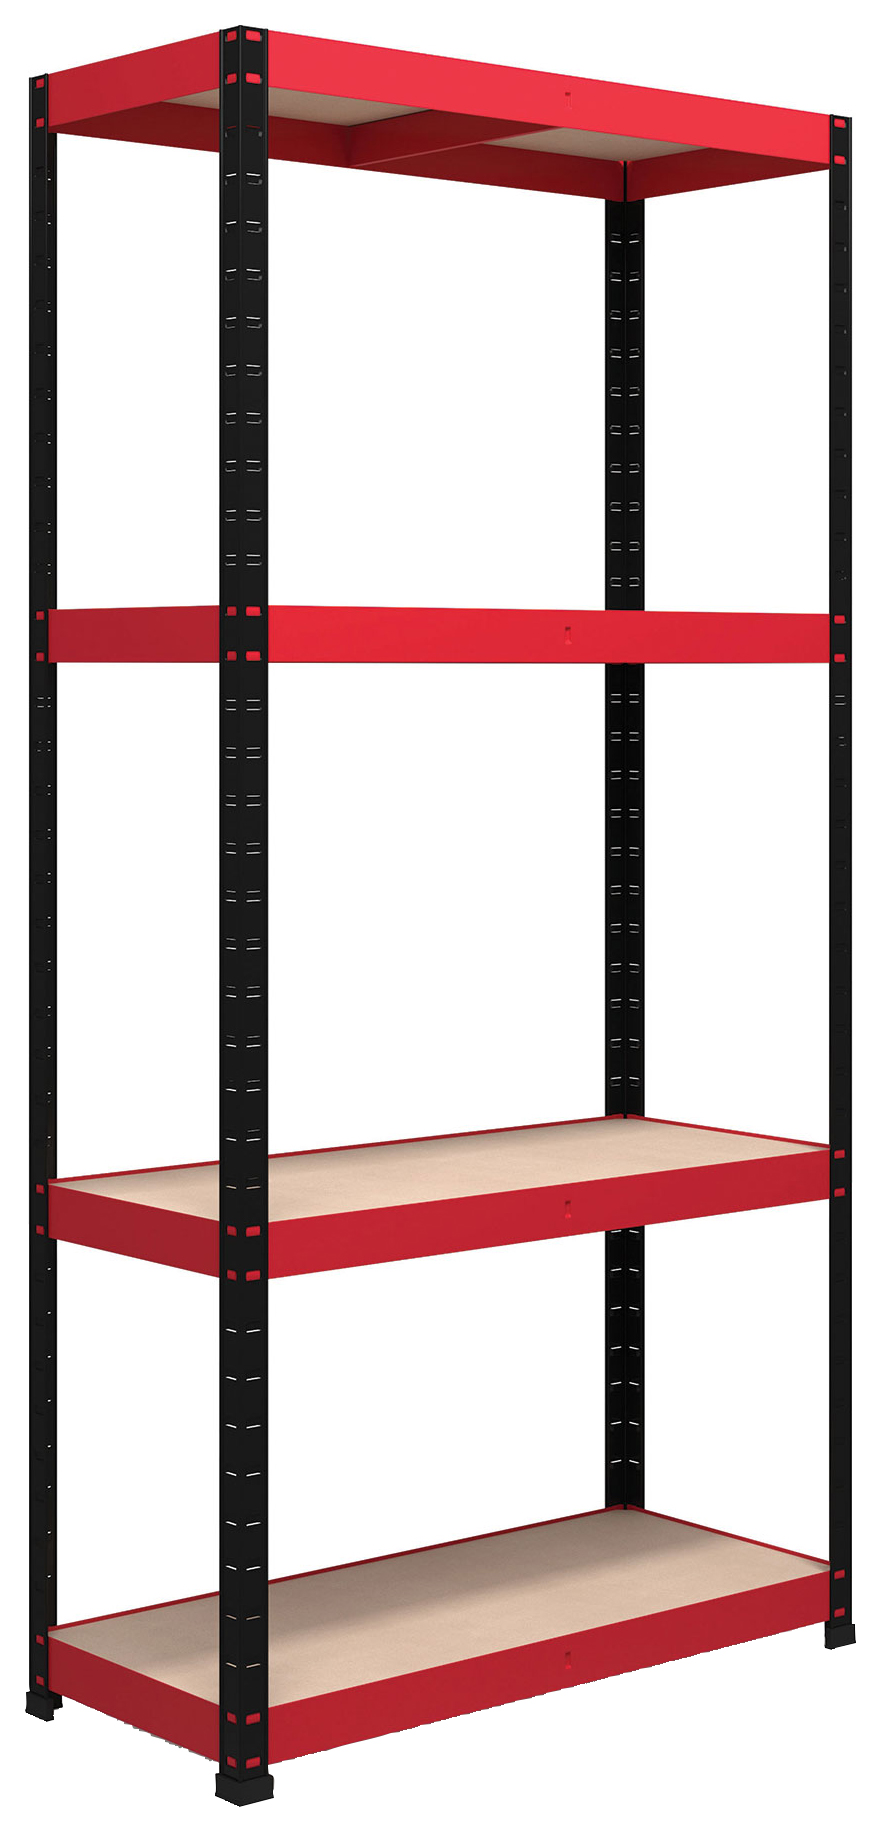 Image of Rb Boss Shelf Kit 4 Wood Shelves - 1800 x 900 x 400mm 300kg Udl